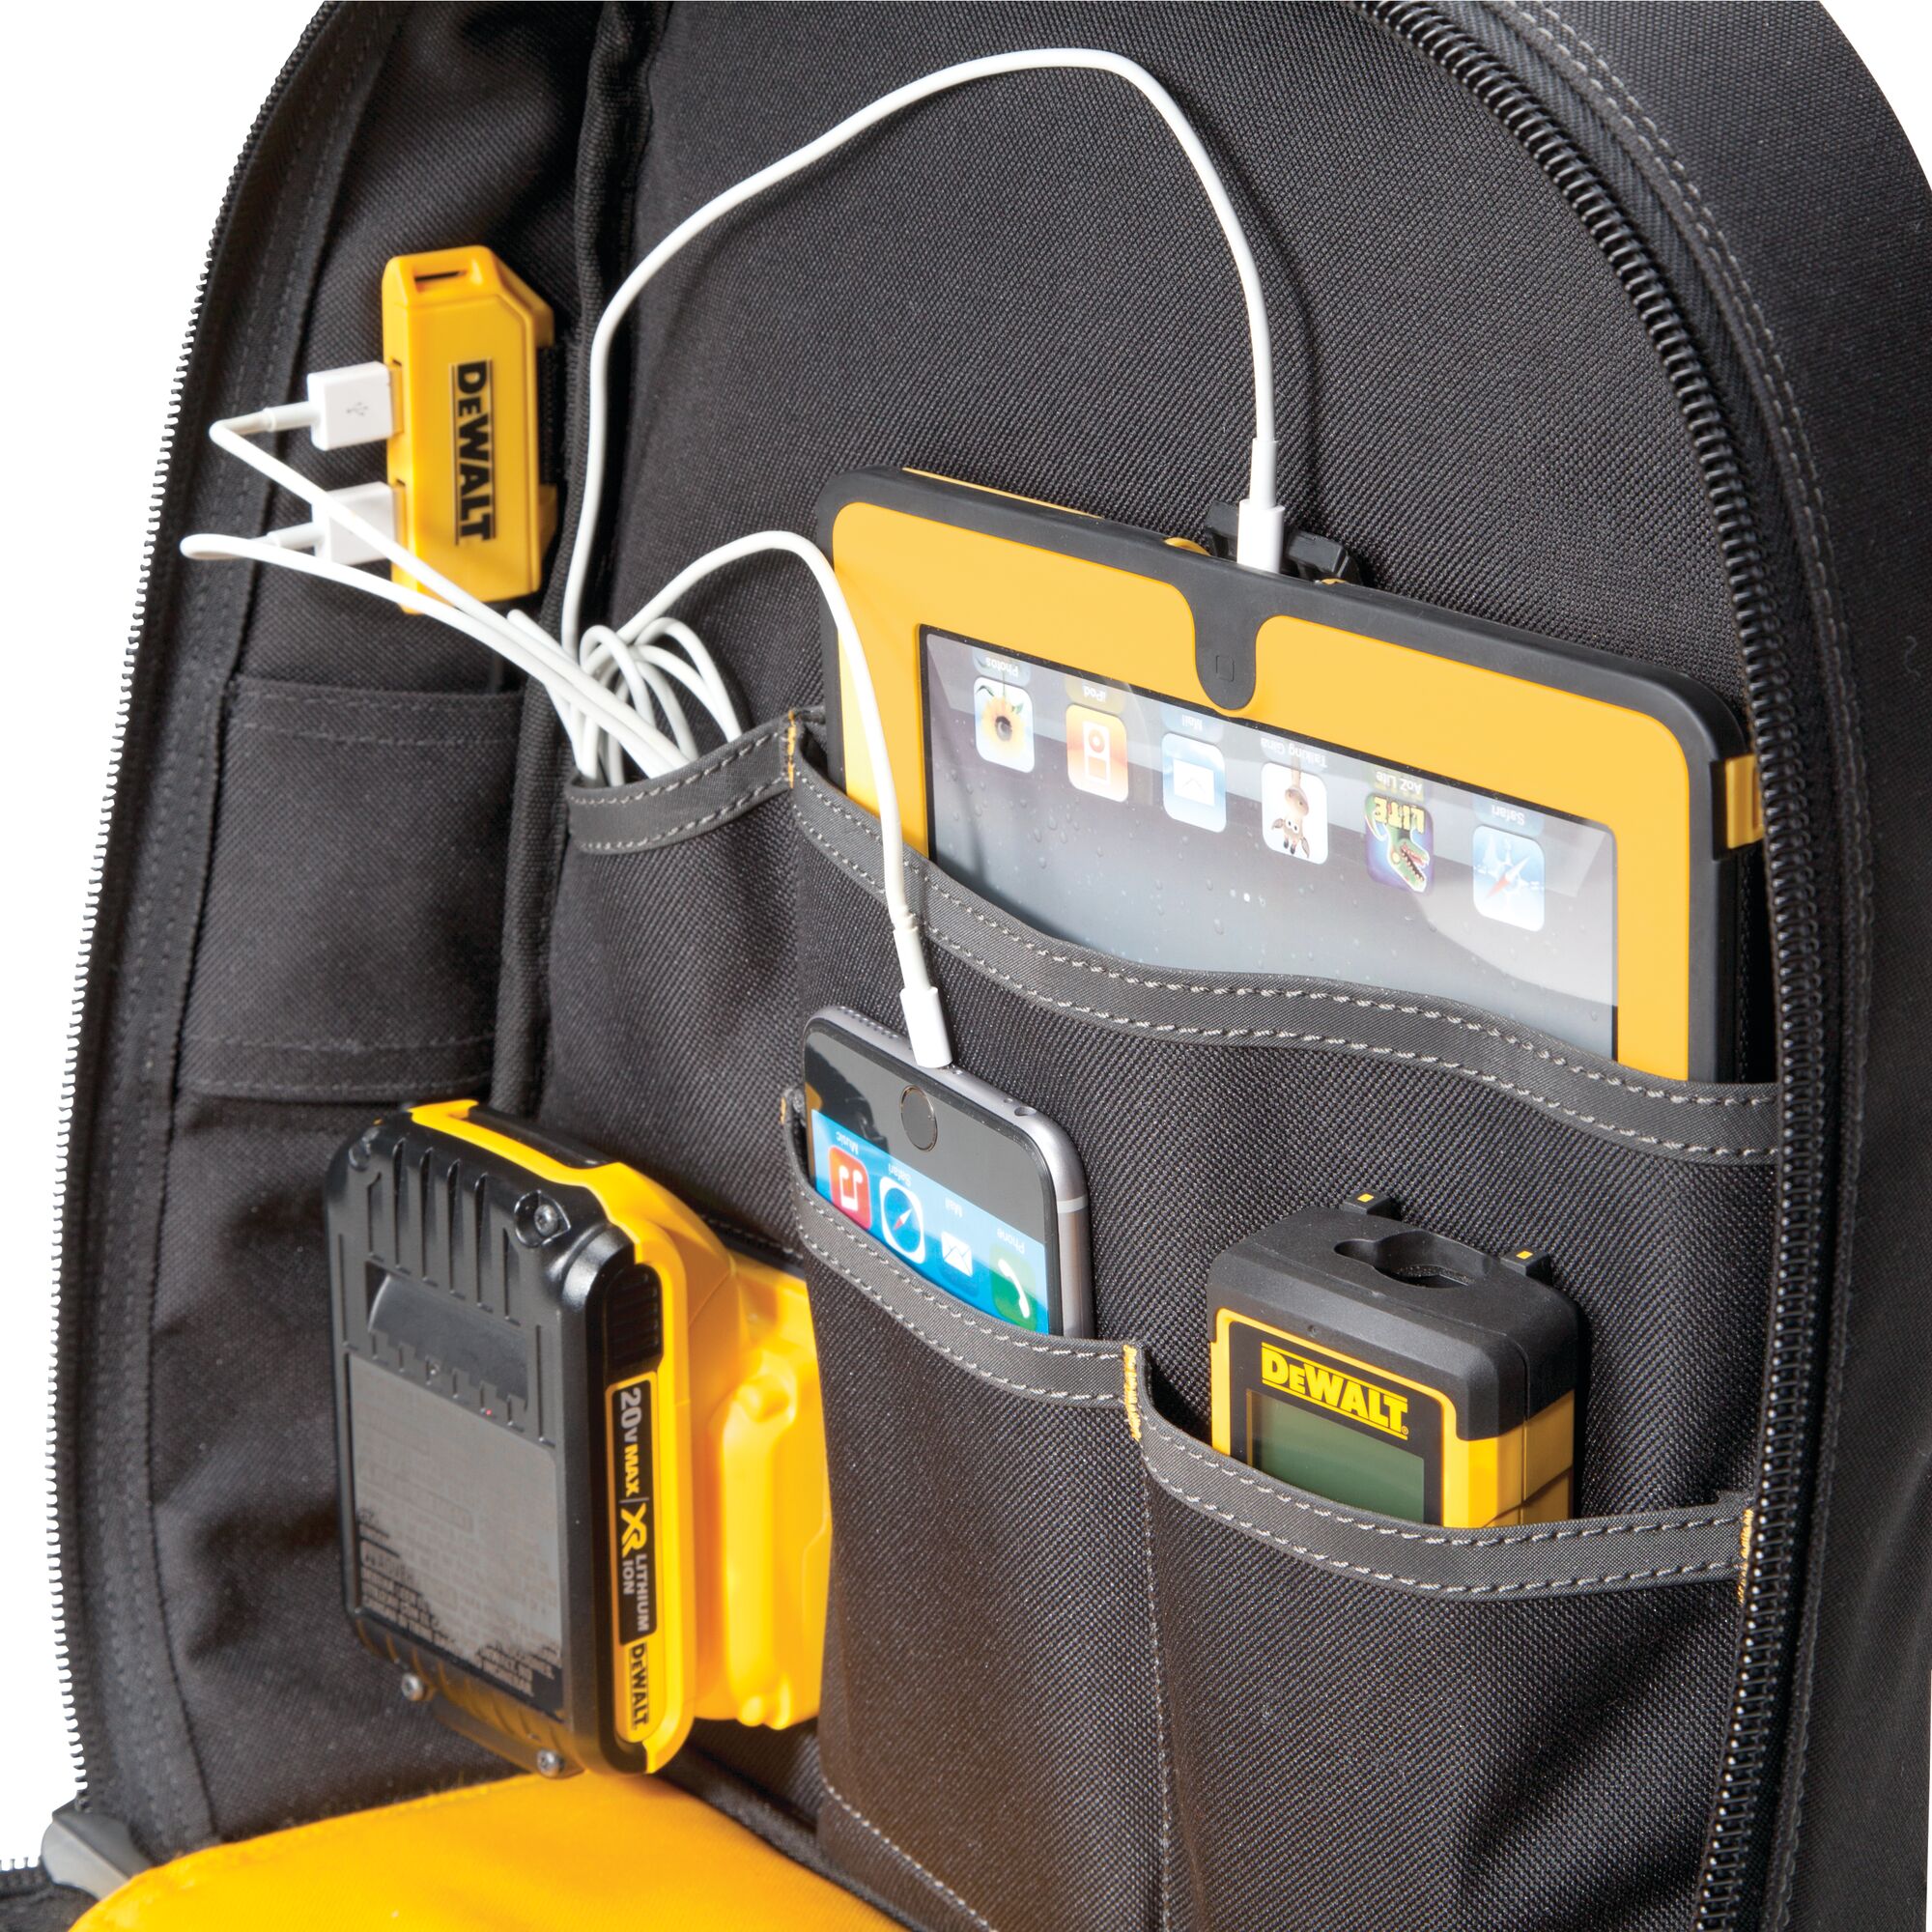 23-Pocket USB Charging Tool Backpack | DEWALT